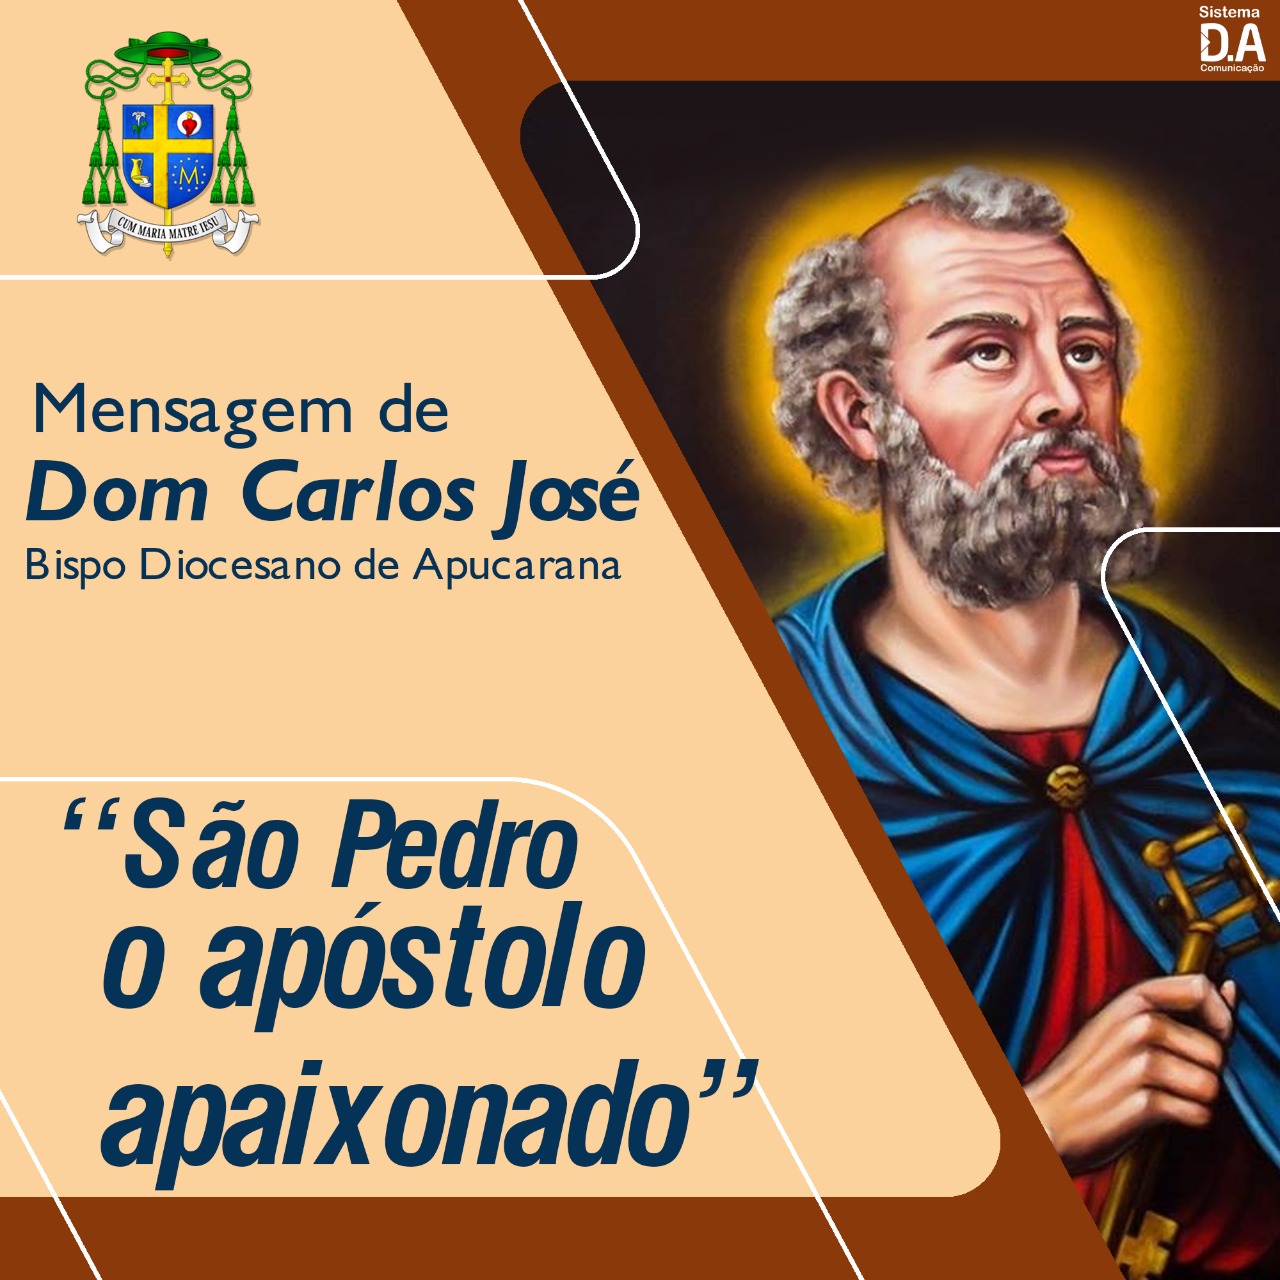 SÃO PEDRO, O APÓSTOLO APAIXONADO - Diocese de Apucarana